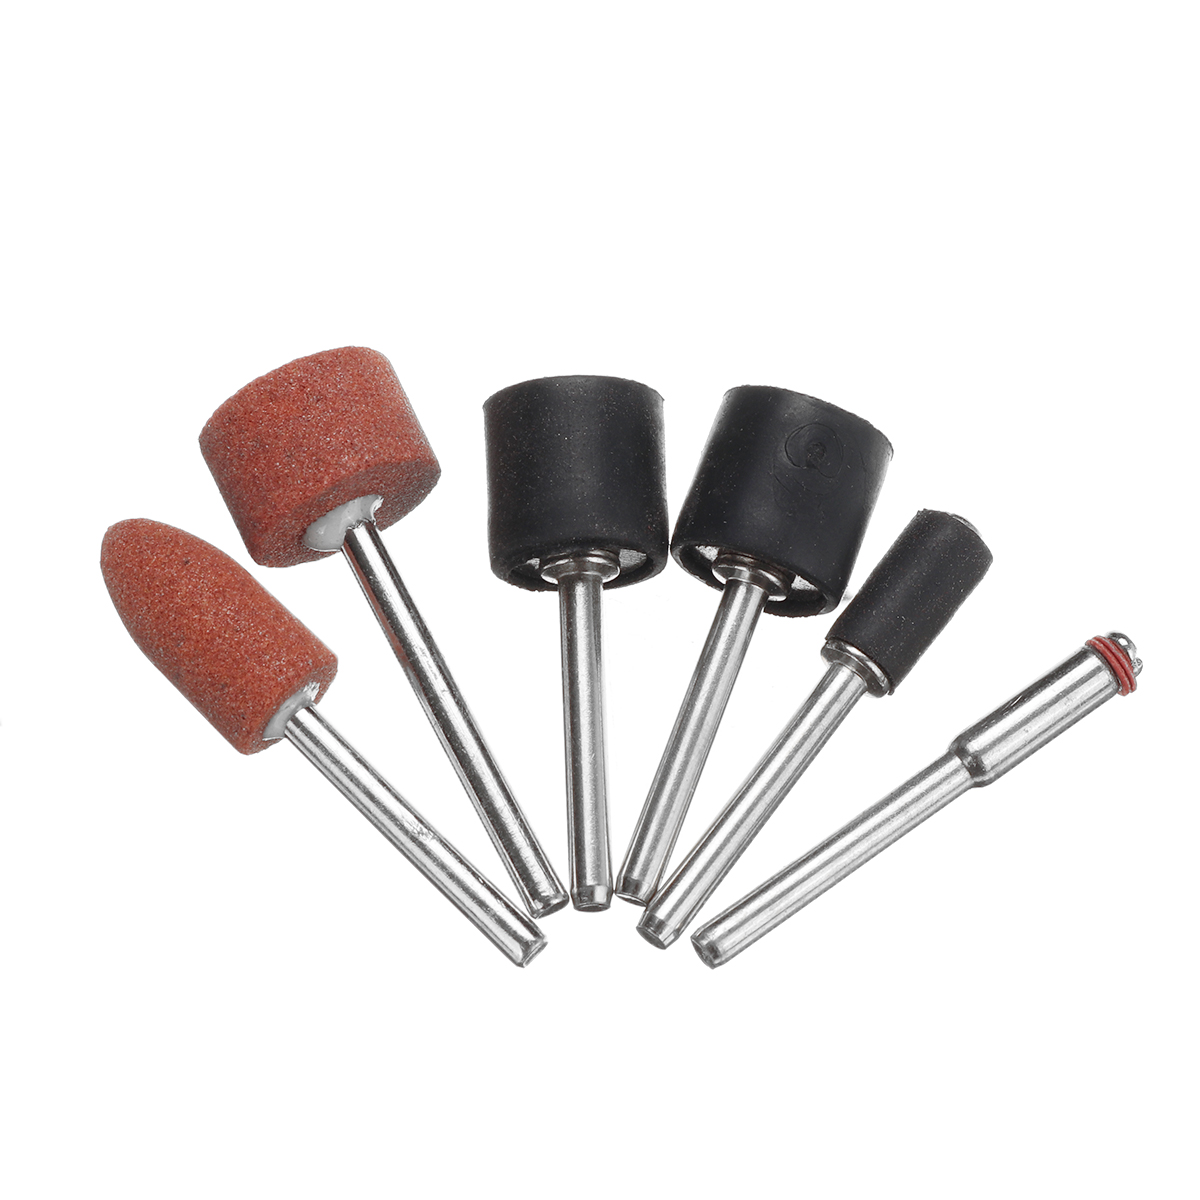 Drillpro-Abrasive-Tools-Sanding-Bands-Set-206pcs-Sanding-Drum-Set-With-Sanding-Mandrels-For-Dremel-R-1803515-4